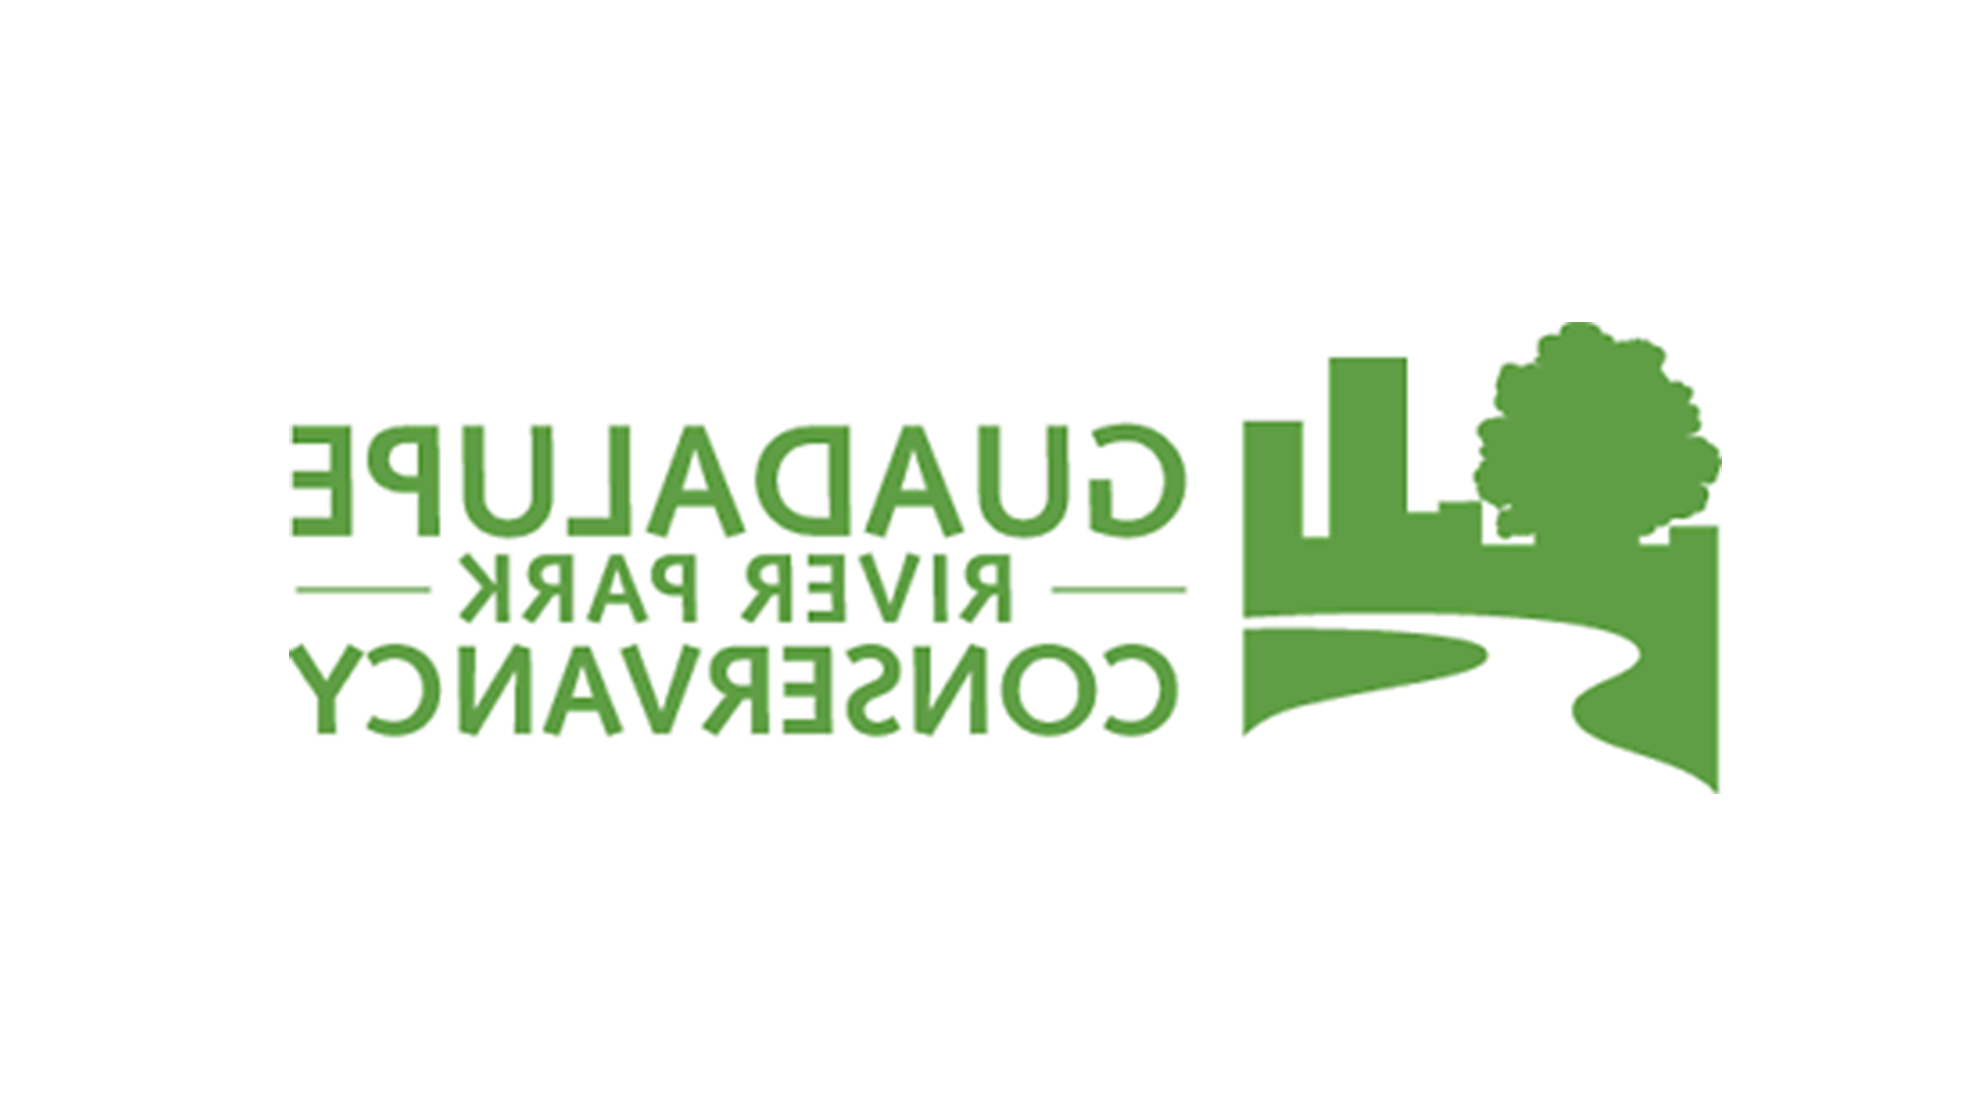 瓜达卢佩河公园管理协会的标志